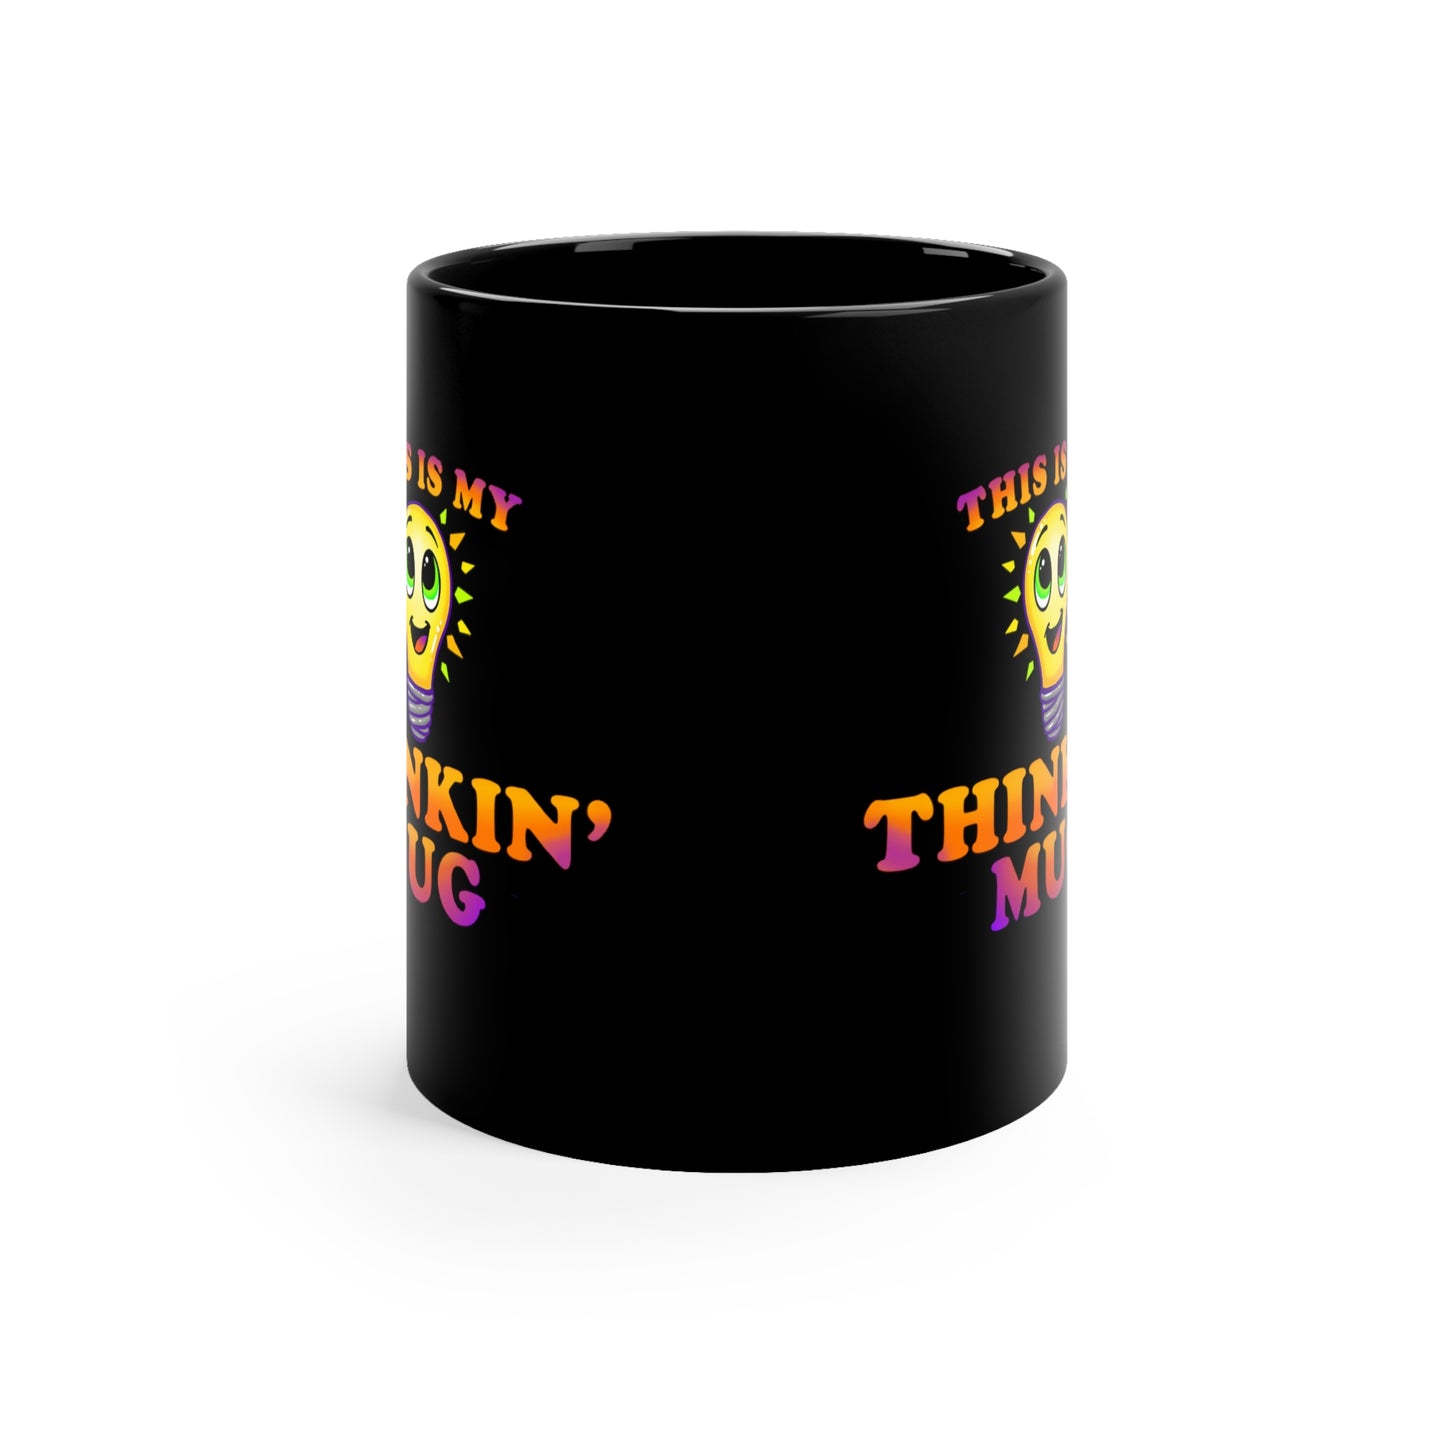 "Thinkin' Mug" Bulb - Black Mug (11oz)